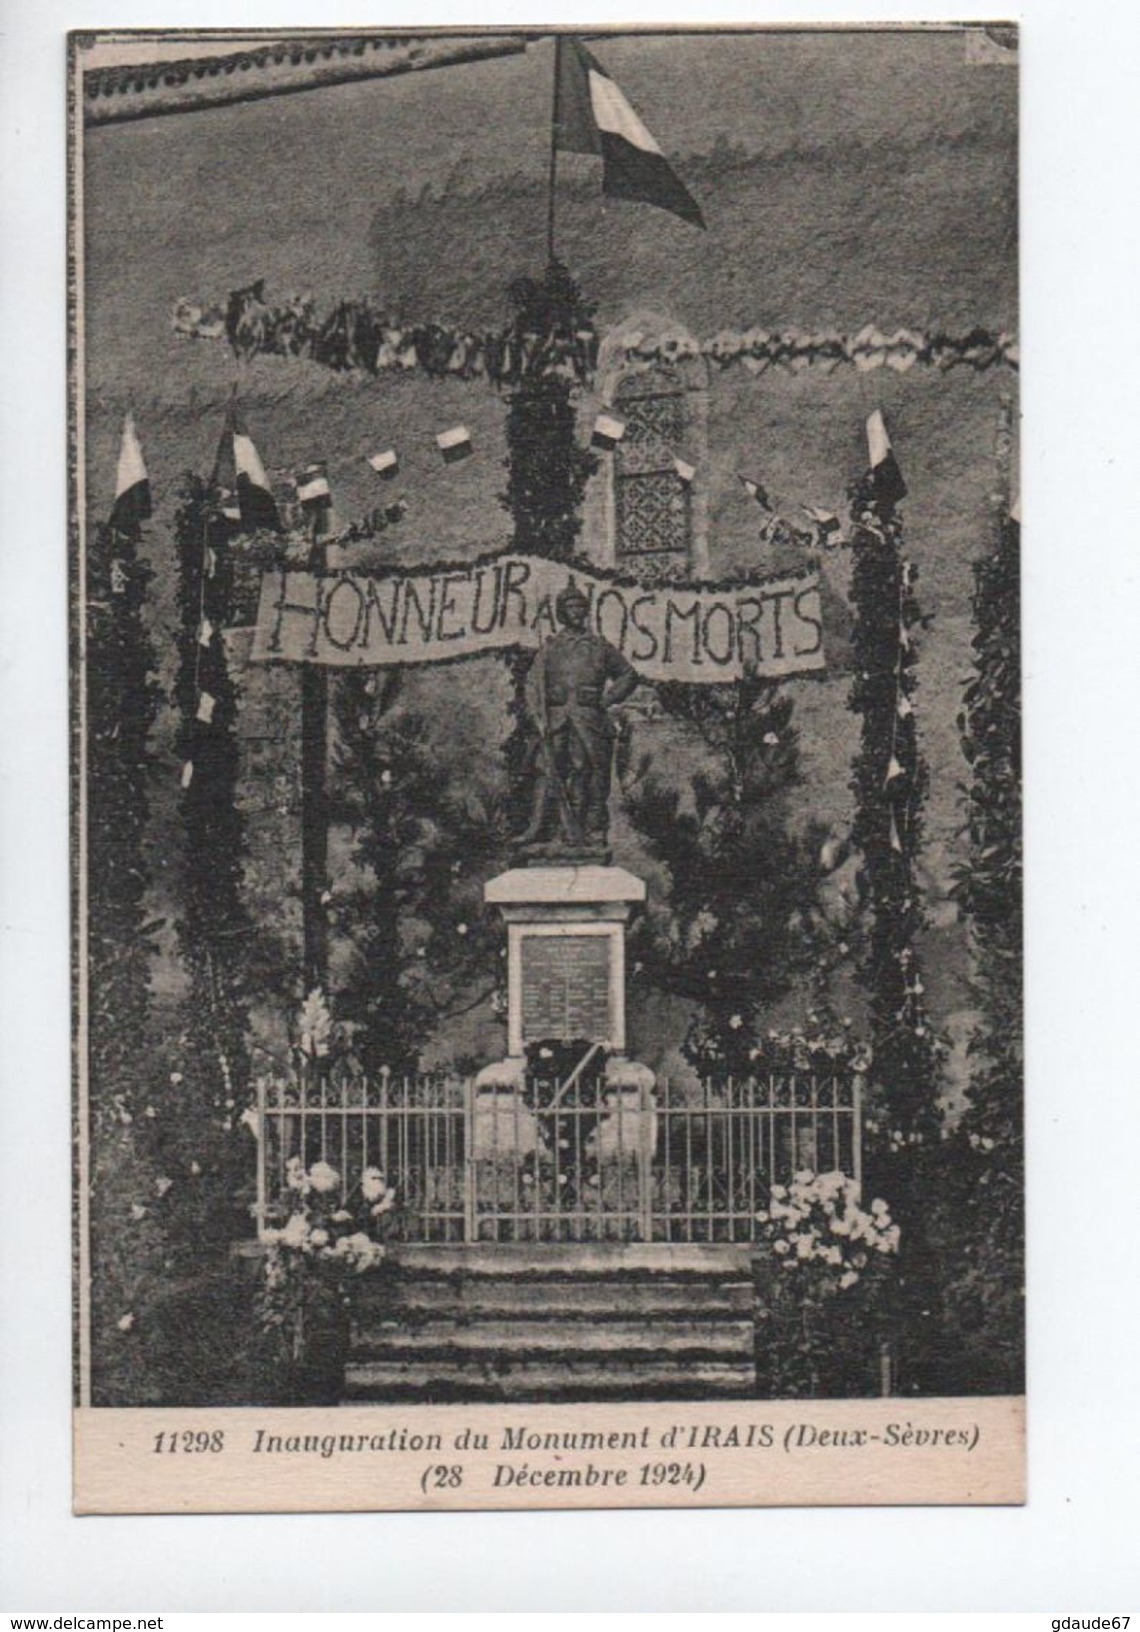 INAUGURATION DU MONUMENT D'IRAIS (79) - 28 DECEMBRE 1924 - Argenton Chateau